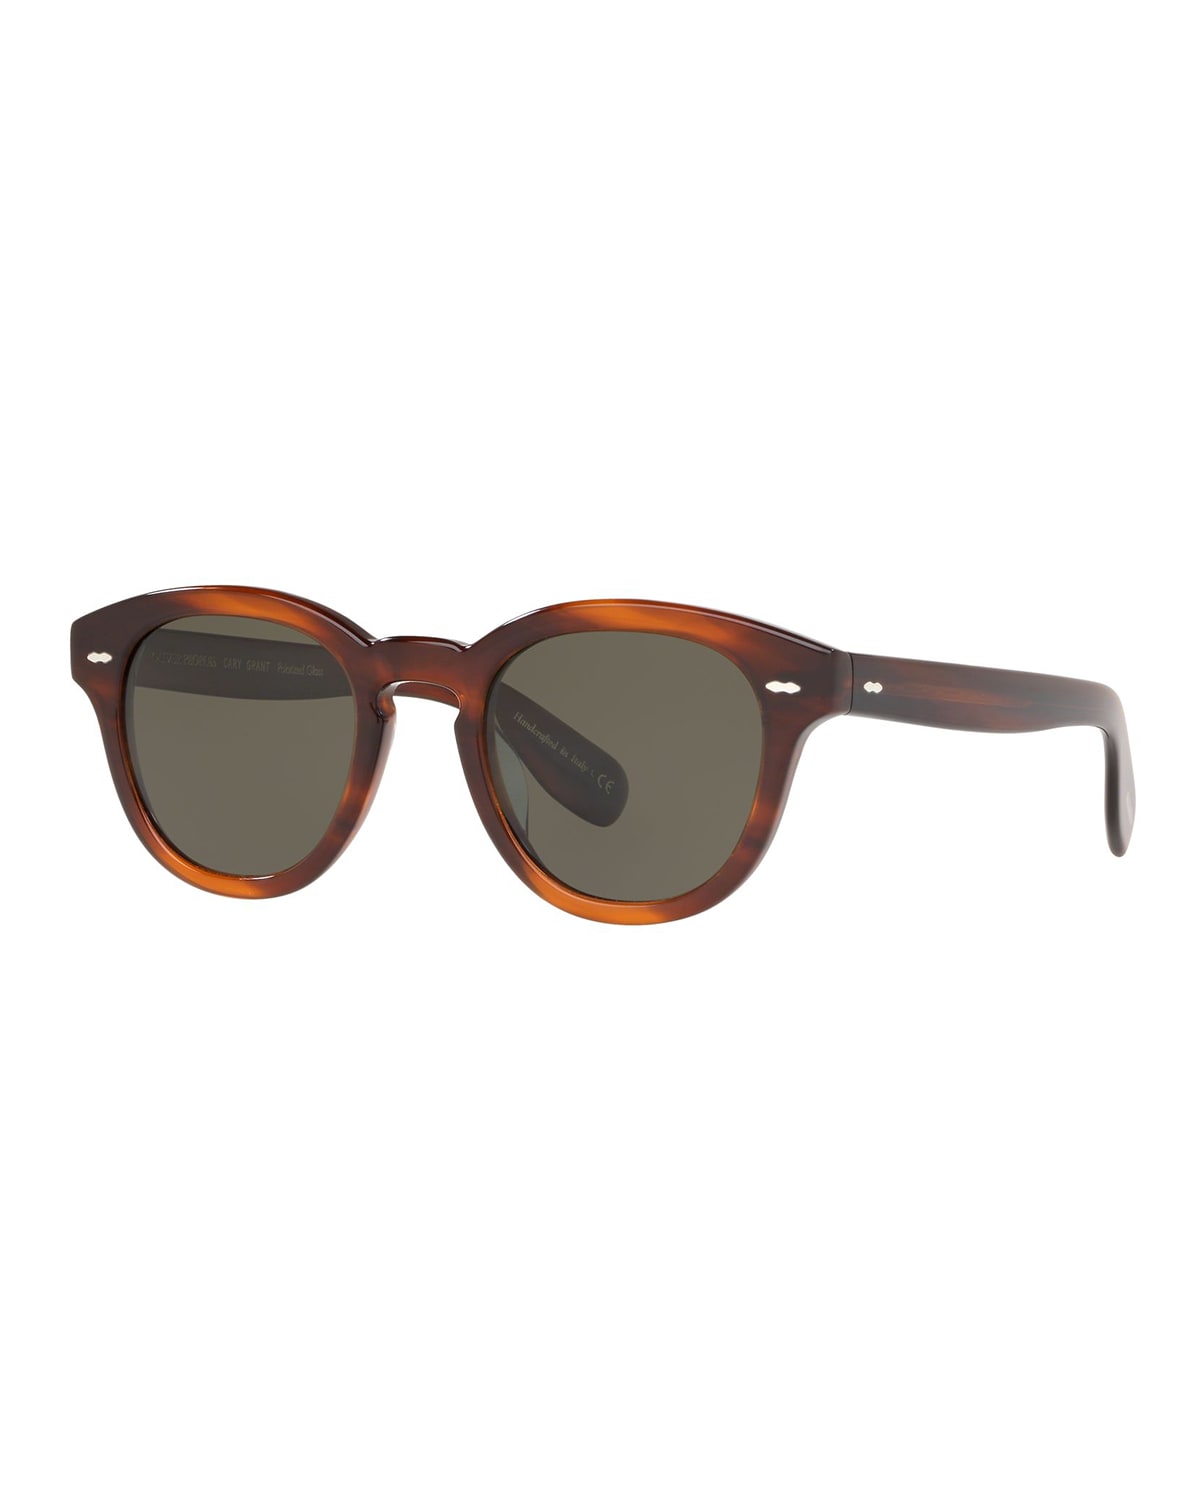 Cary Grant Oval Polarized Acetate Sunglasses